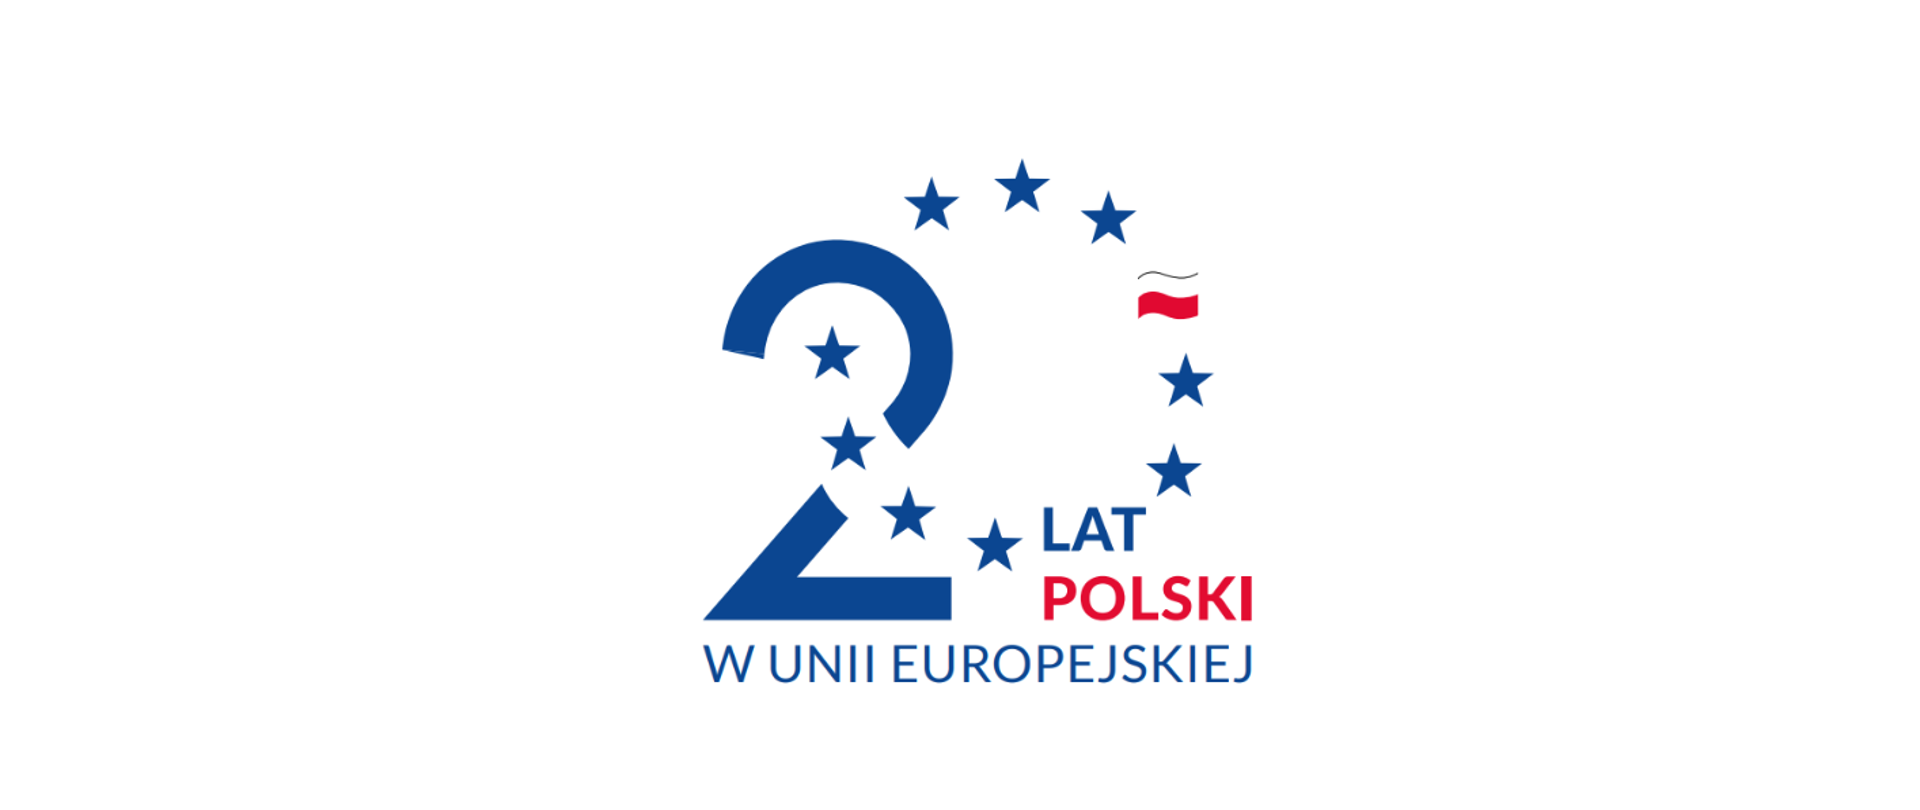 Ikonografika. Po lewej cyfra 2 przecinana okręgiem w kształcie cyfry 0 utworzonej z gwiazd. Zamiast jednej z gwiazd flaga Polski. Wpleciony napis "Lat Polski w Unii Europejskiej"